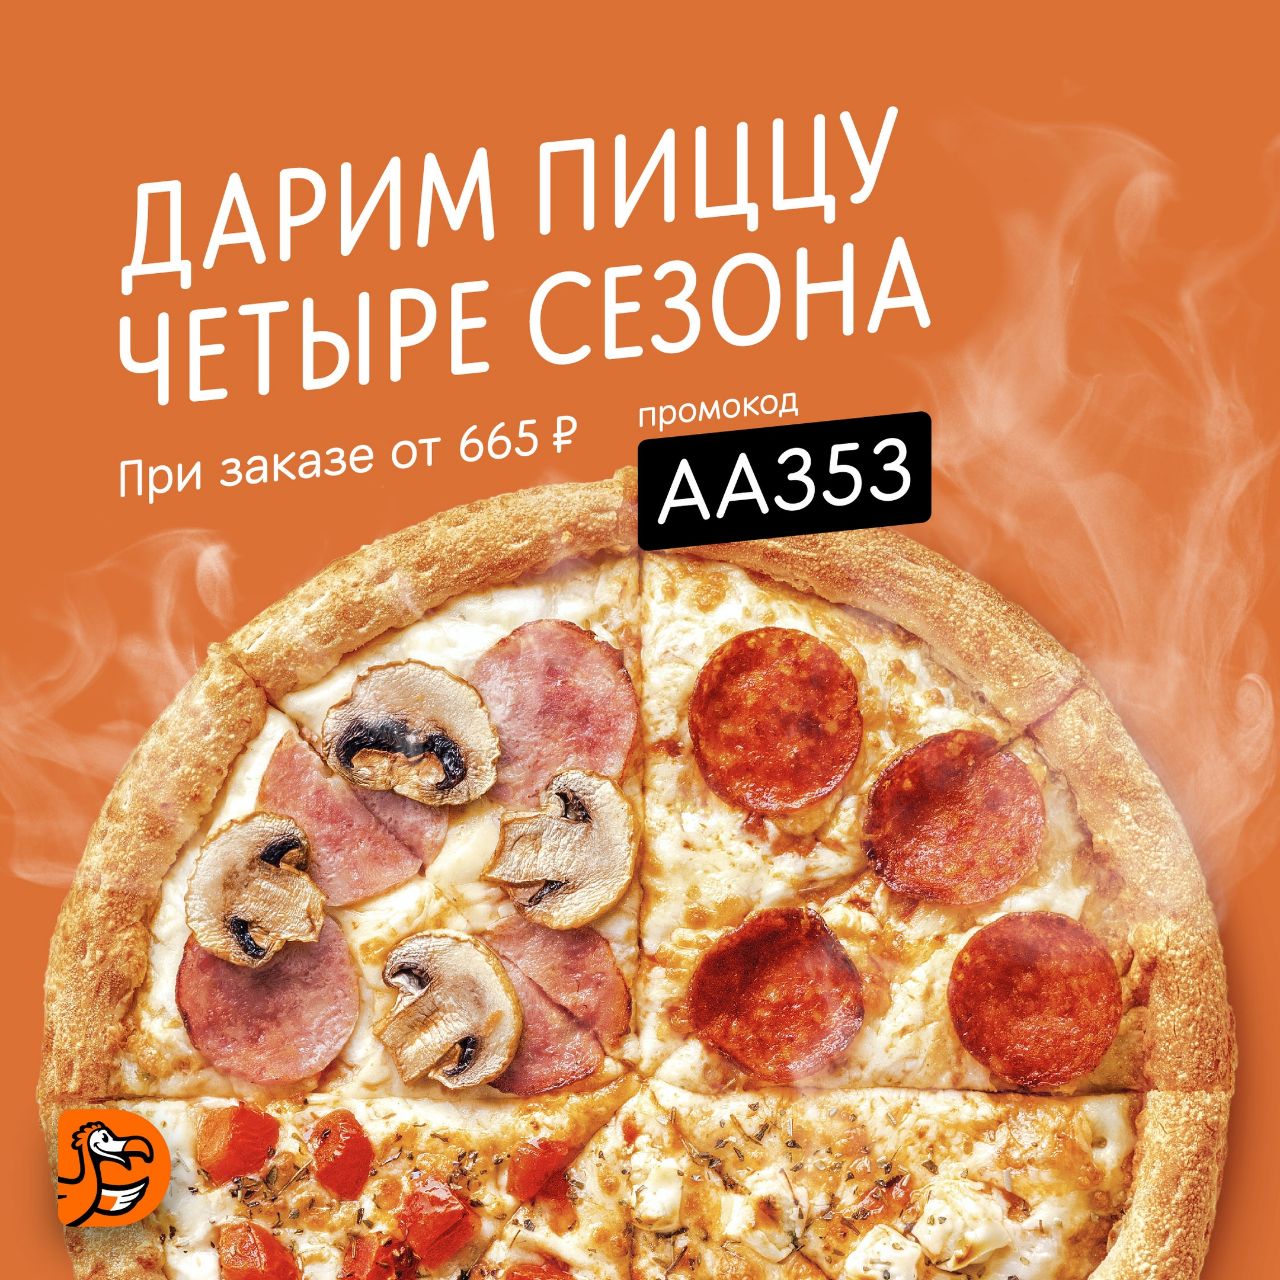 додо пицца ассорти фото 7